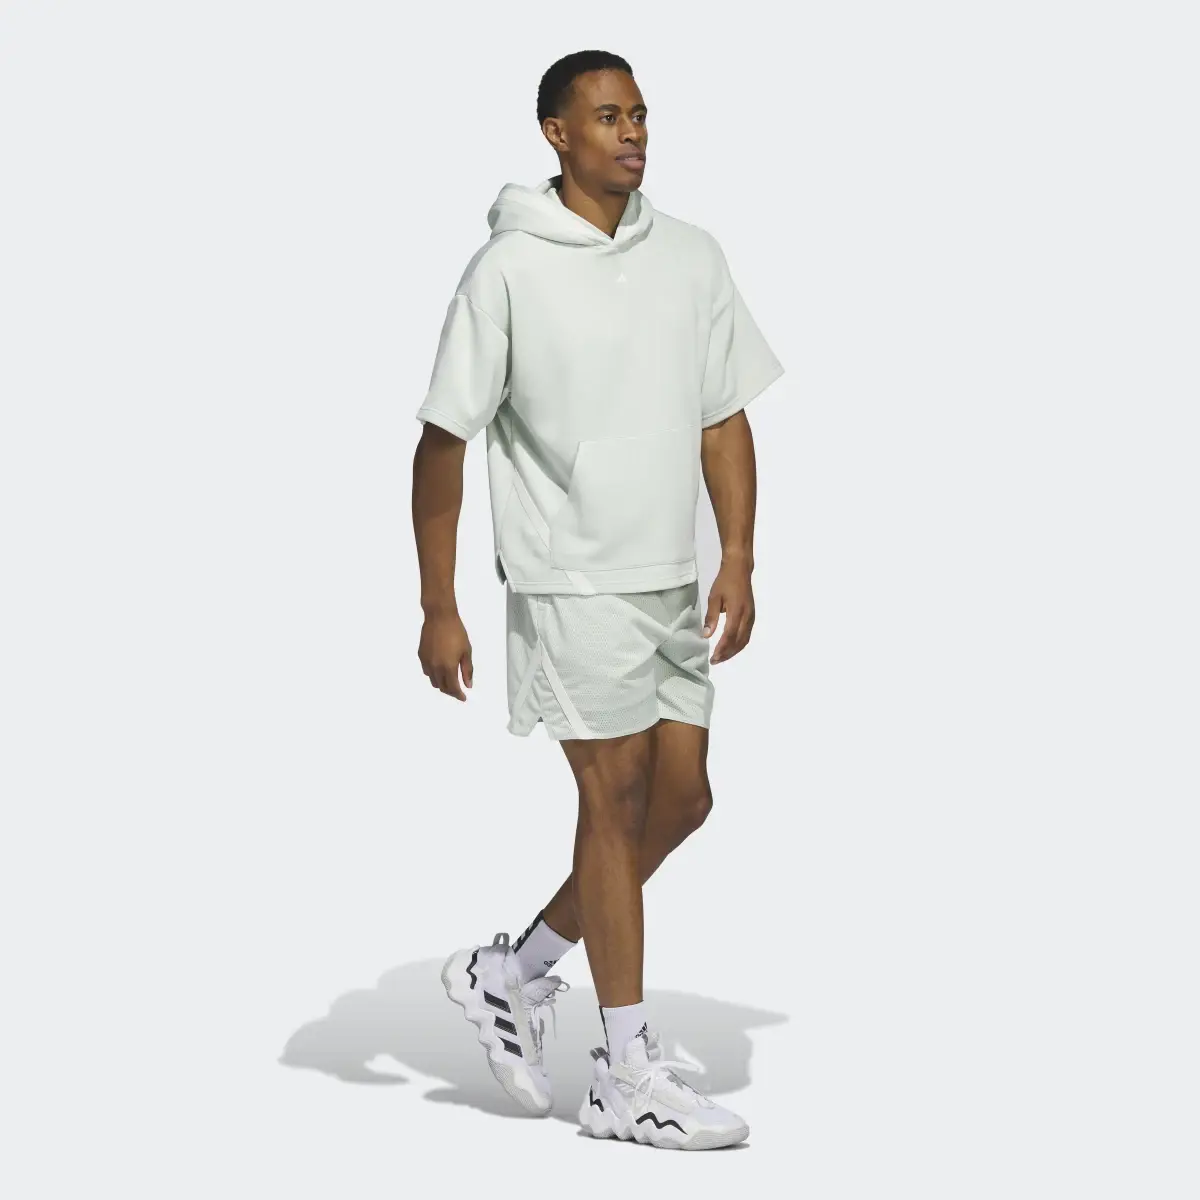 Adidas Select Summer Shorts. 3